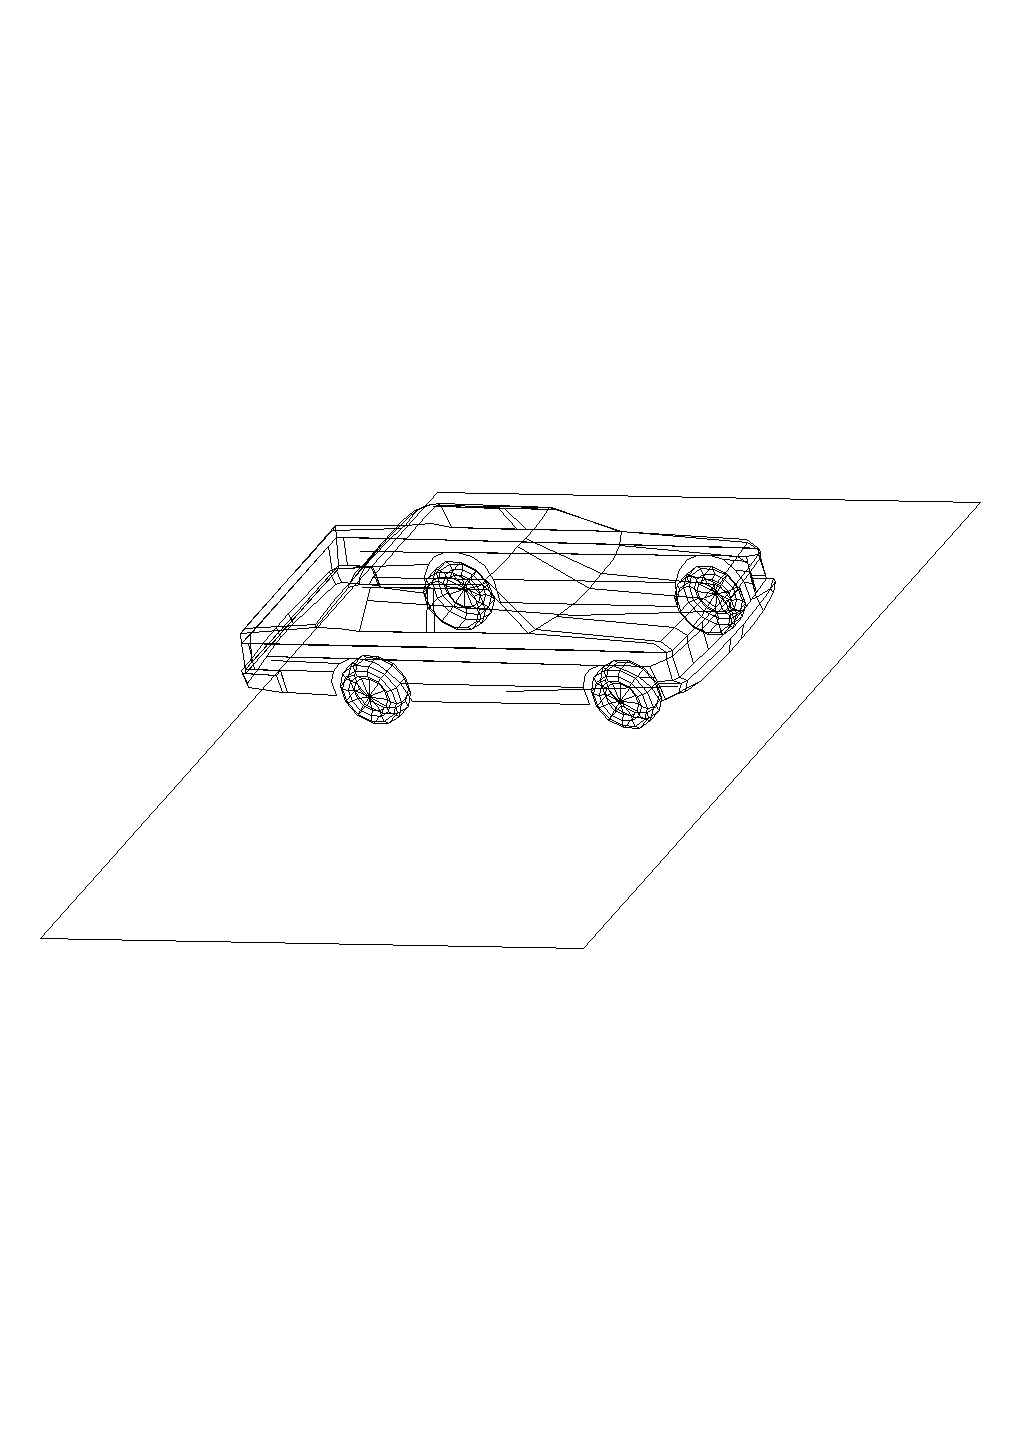 某汽车三维模型CAD节点详细构造设计